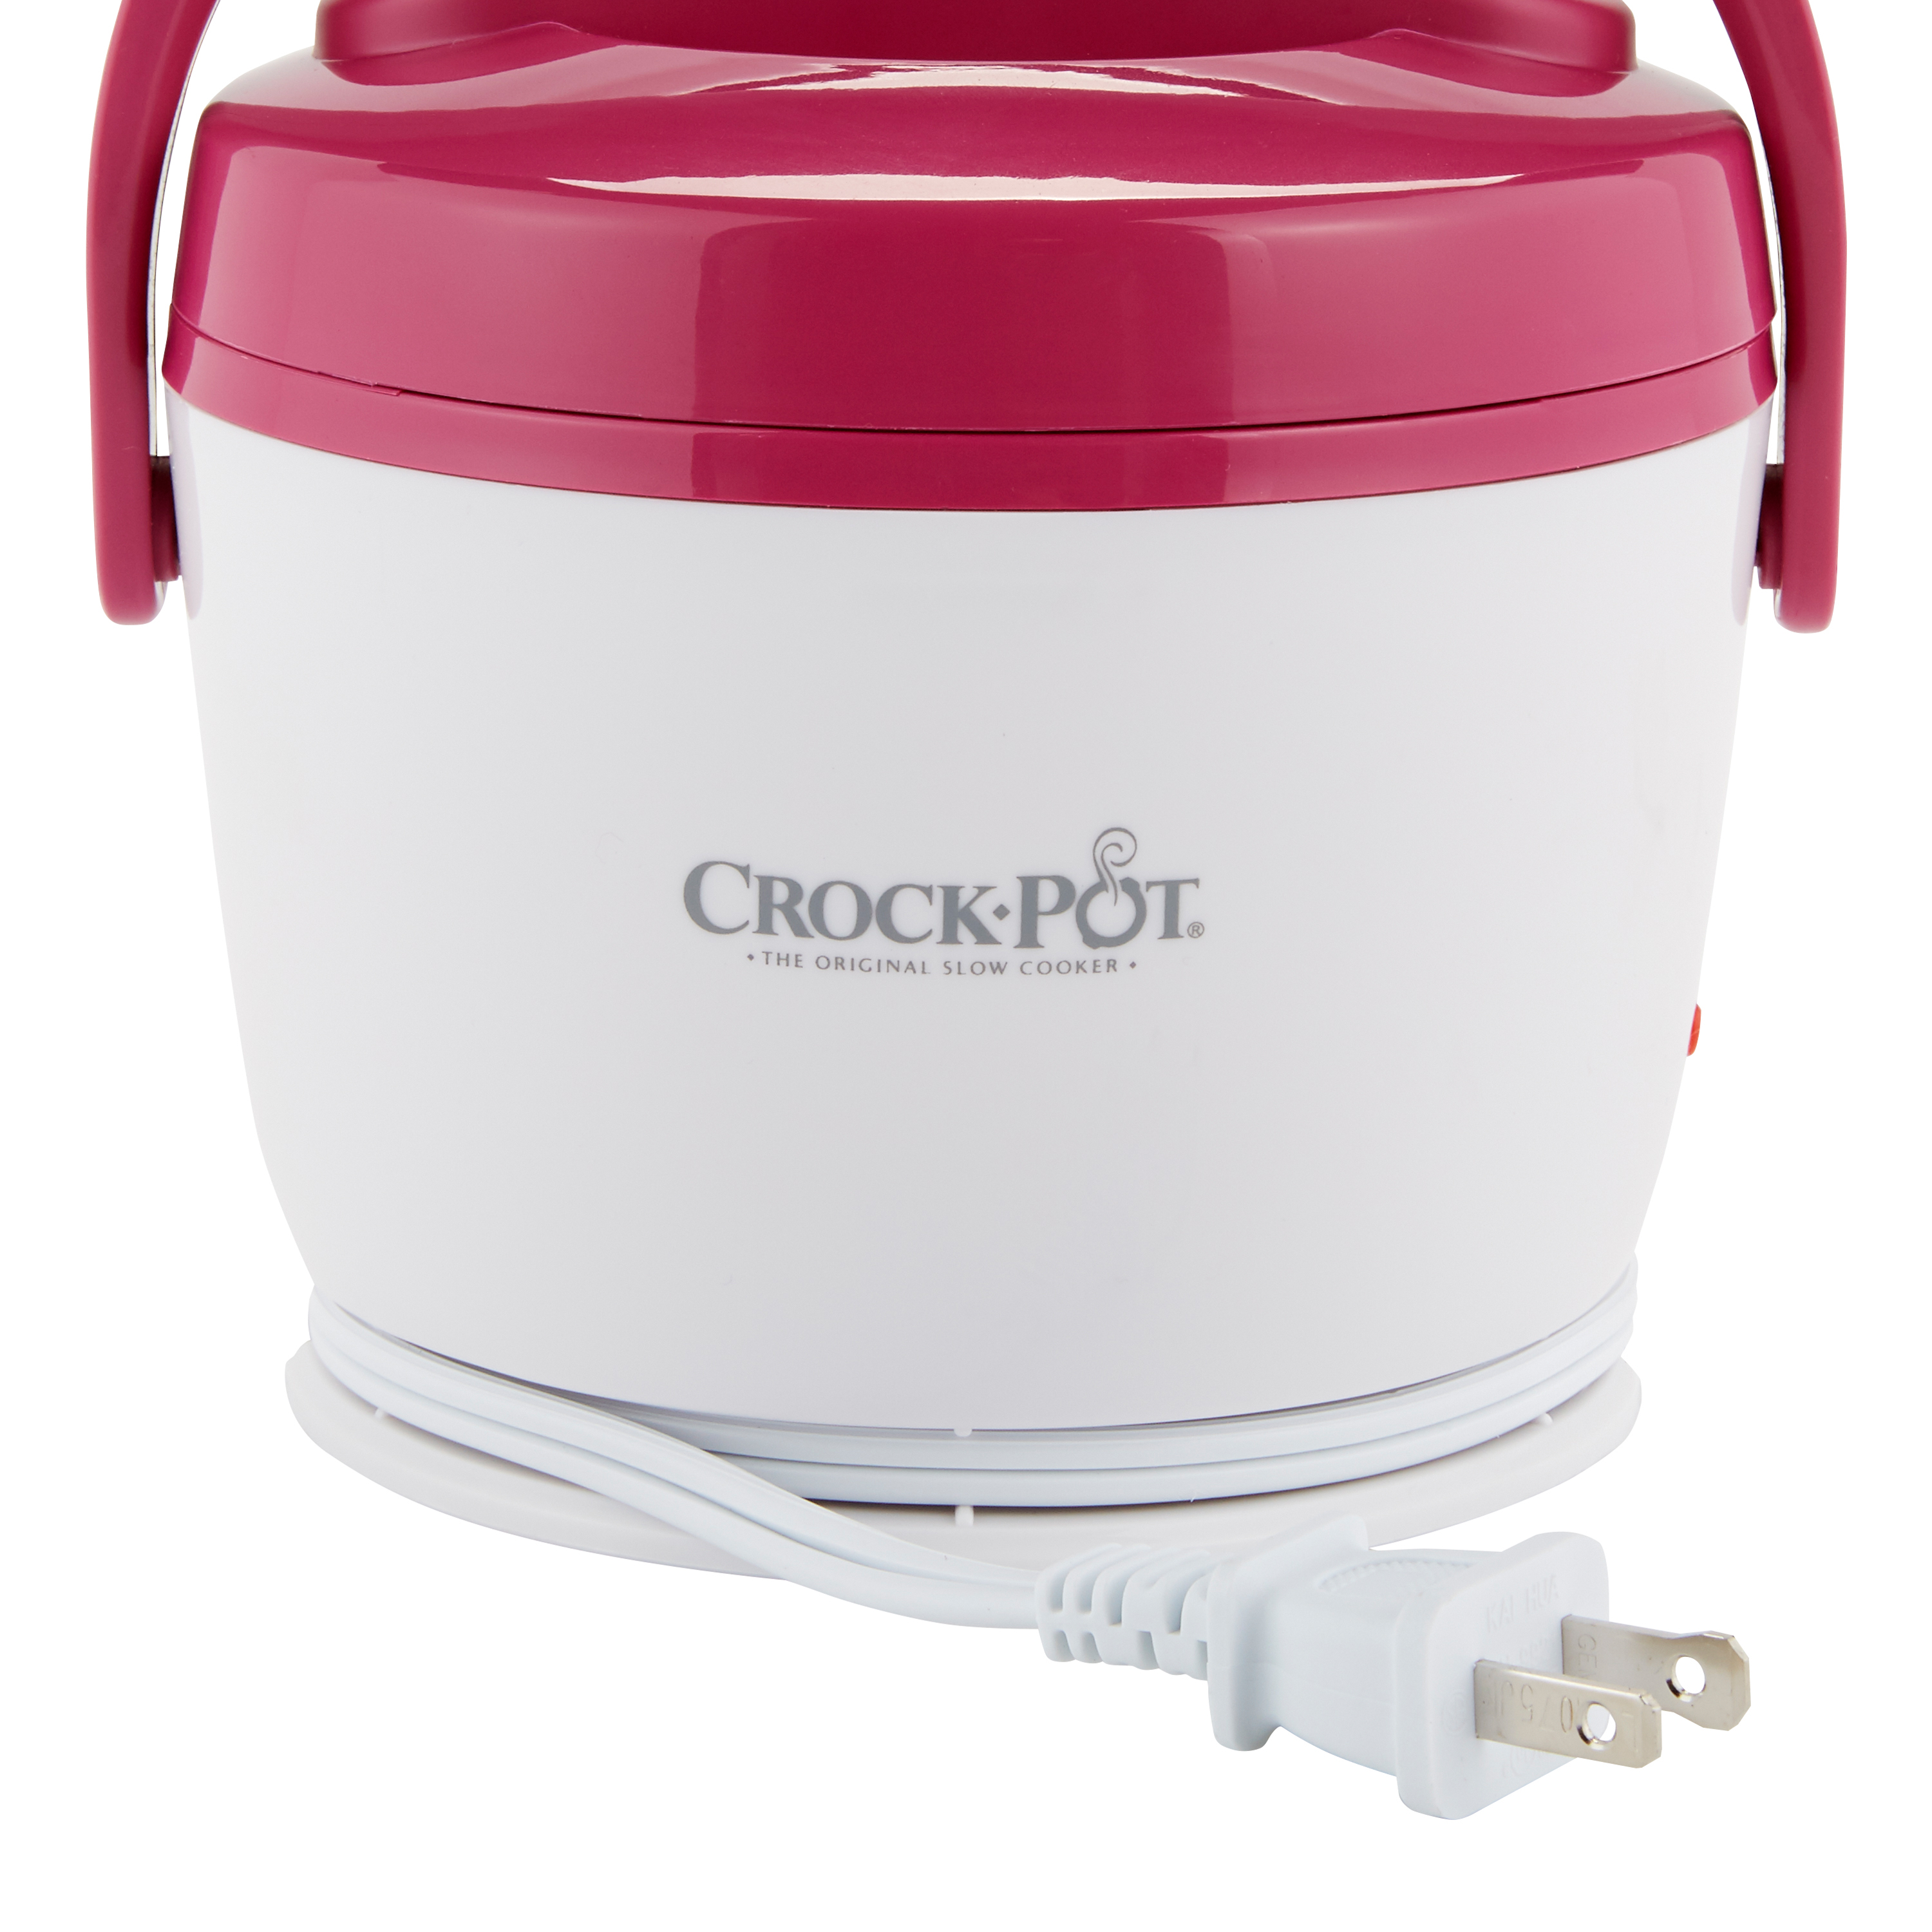 Crock-Pot Lunch Crock Food Warmer, Pink (SCCPLC200-R) - image 5 of 10